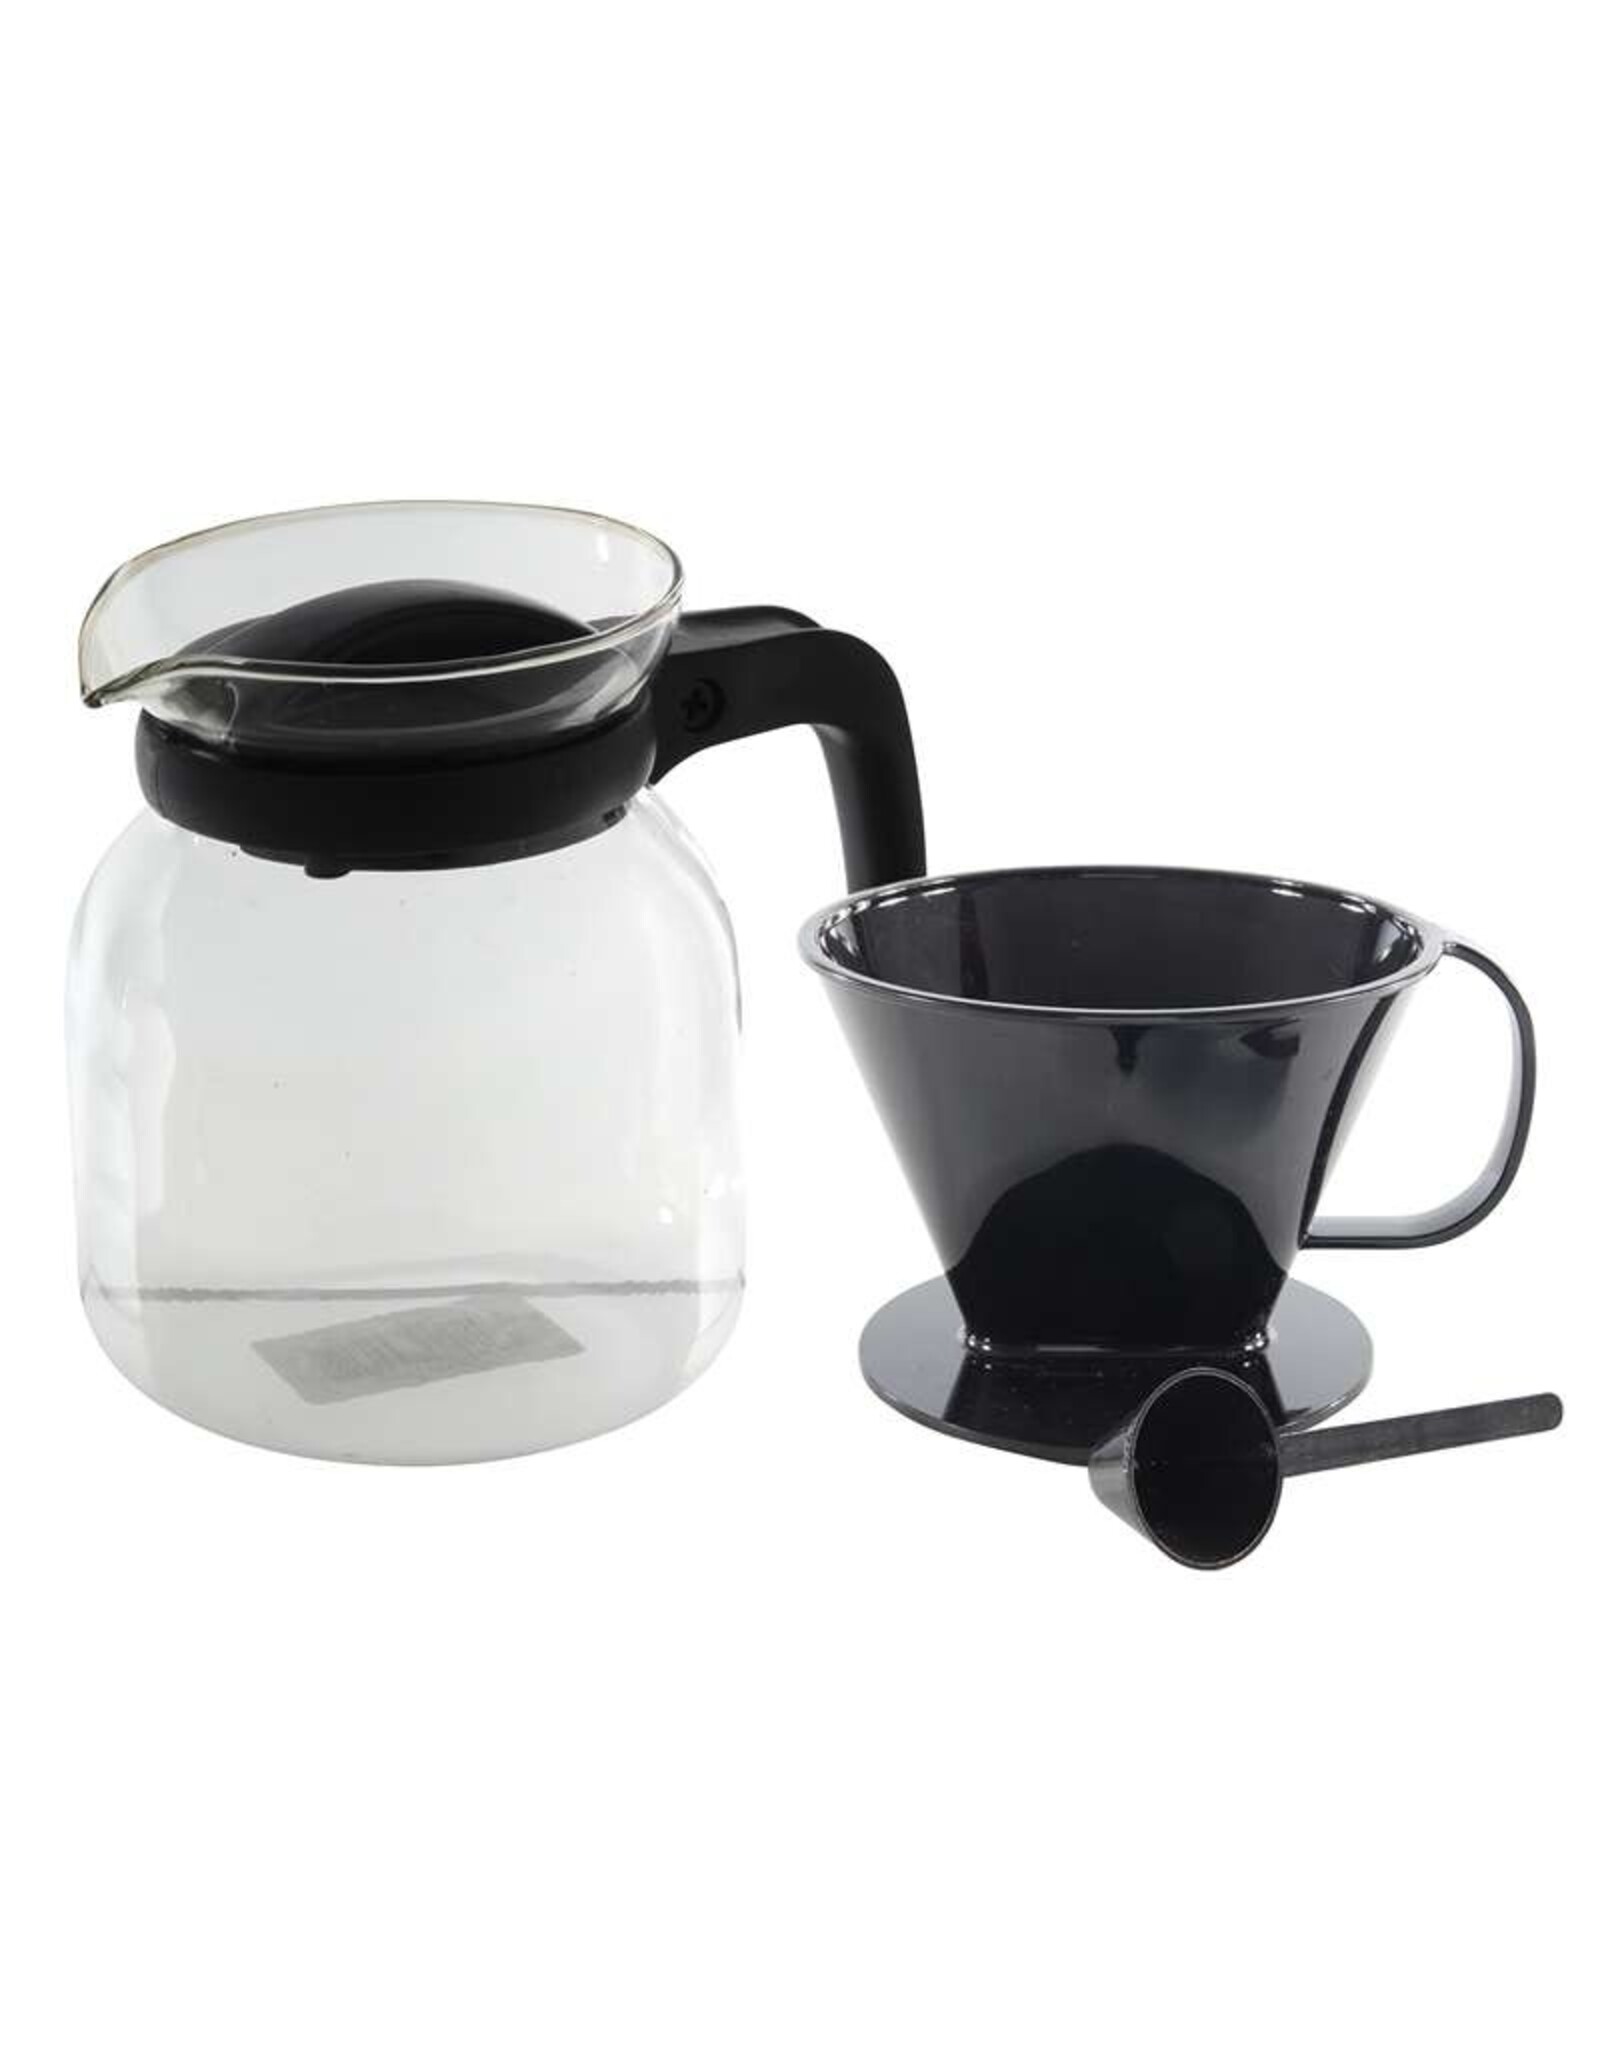 MERKLOOS Koffiepot van Glas - 1.2 Liter - Inclusief Filterhouder en Maatschepje